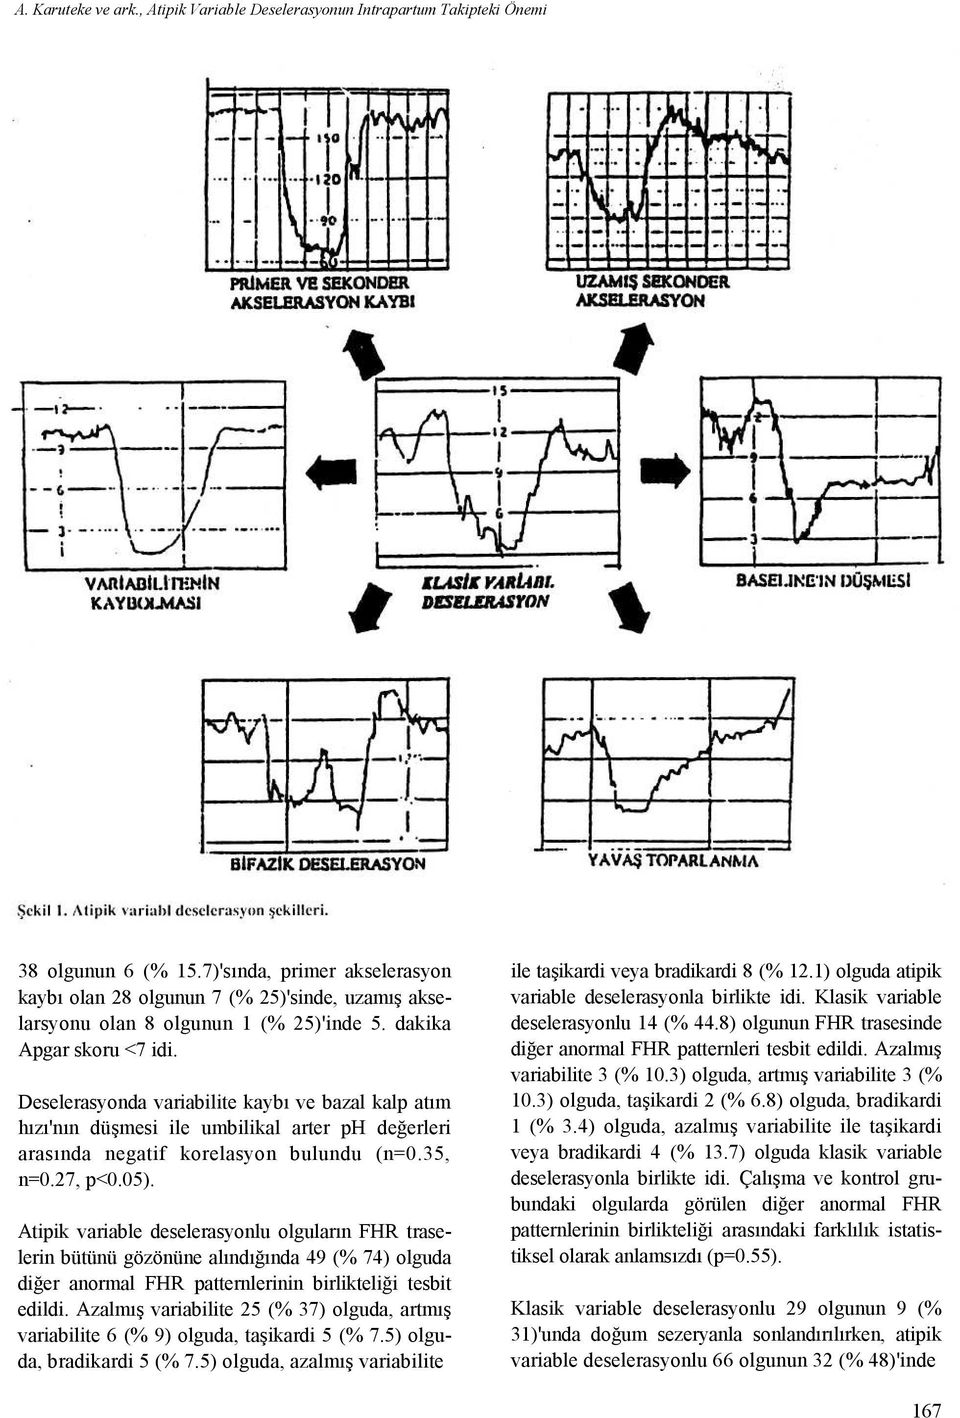 Deselerasyonda variabilite kaybı ve bazal kalp atım hızı'nın düşmesi ile umbilikal arter ph değerleri arasında negatif korelasyon bulundu (n=0.35, n=0.27, p<0.05).